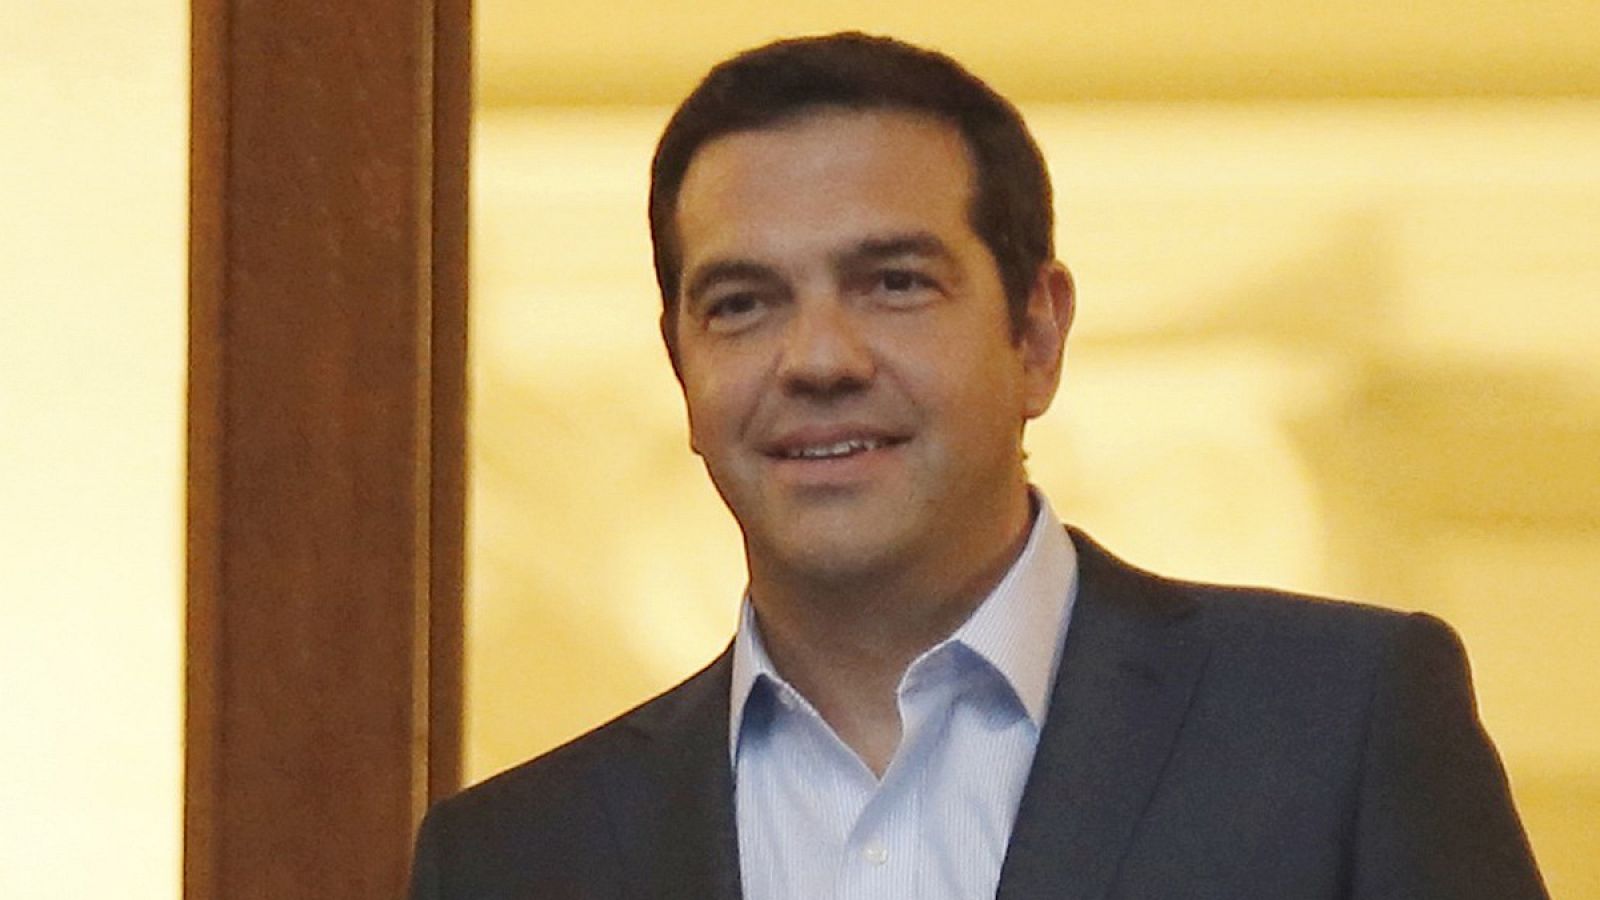 El ex primer ministro griego Alexis Tsipras